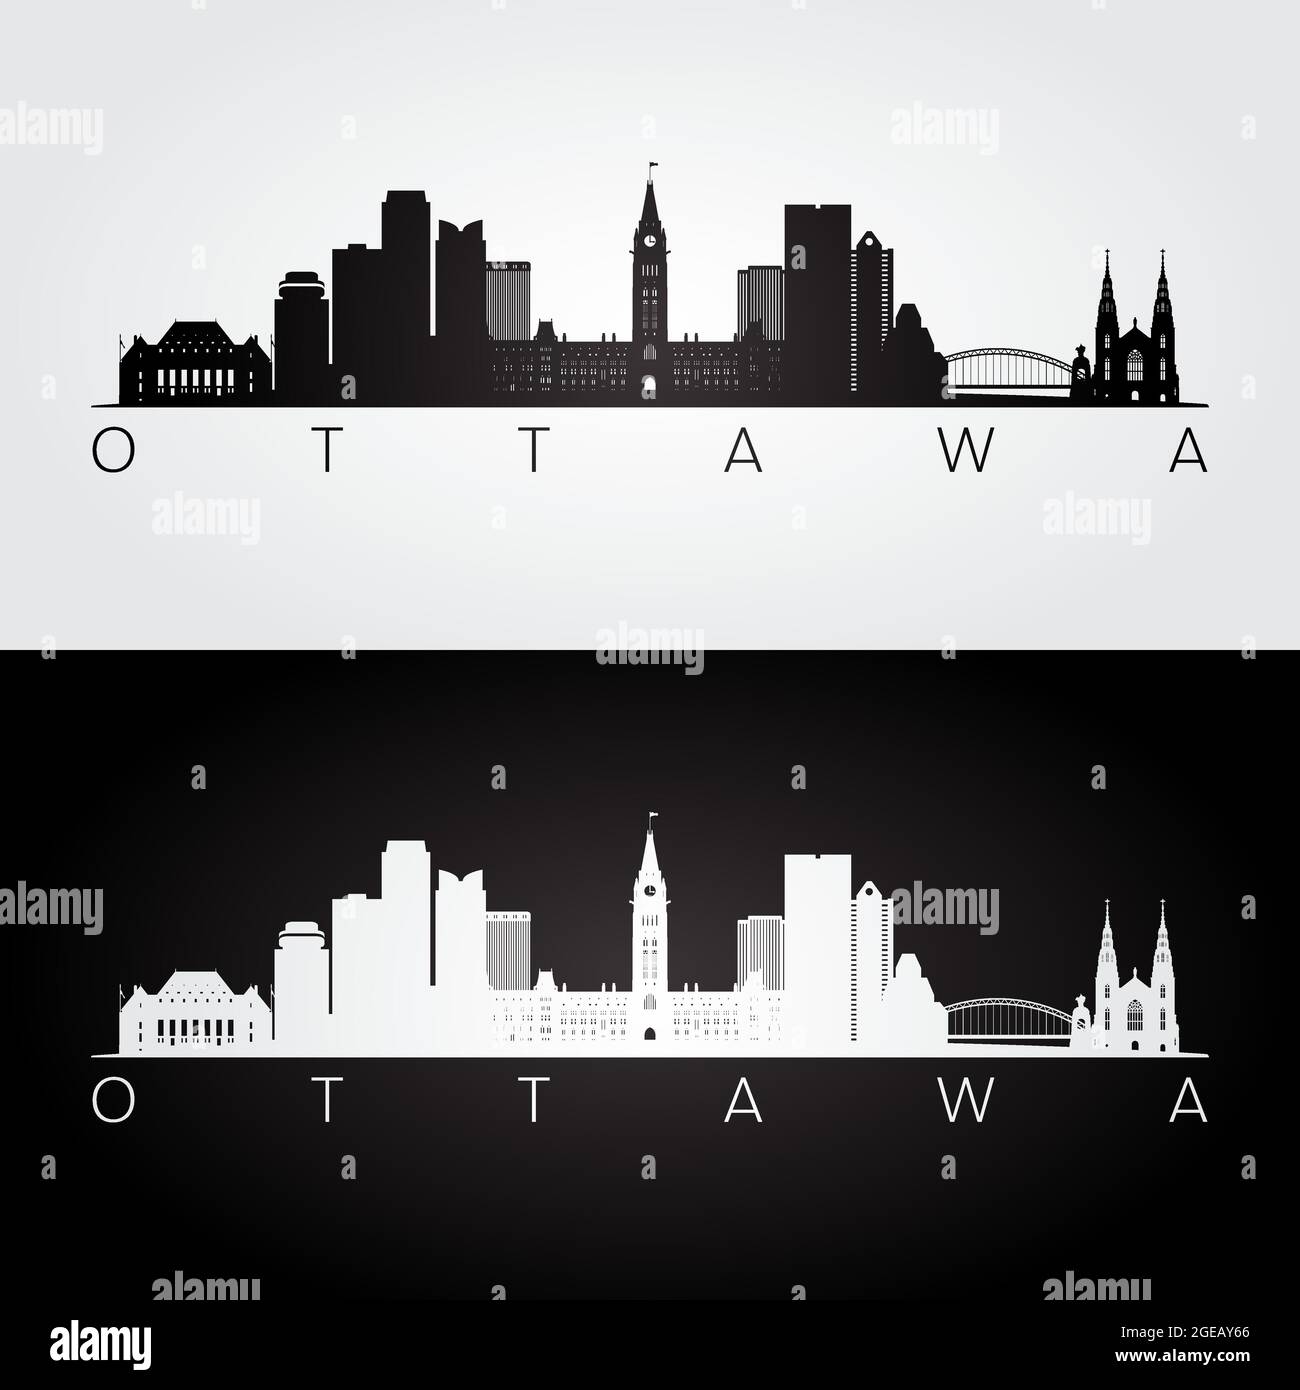 Ottawa skyline and landmarks silhouette, black and white design, vector illustration. Stock Vector